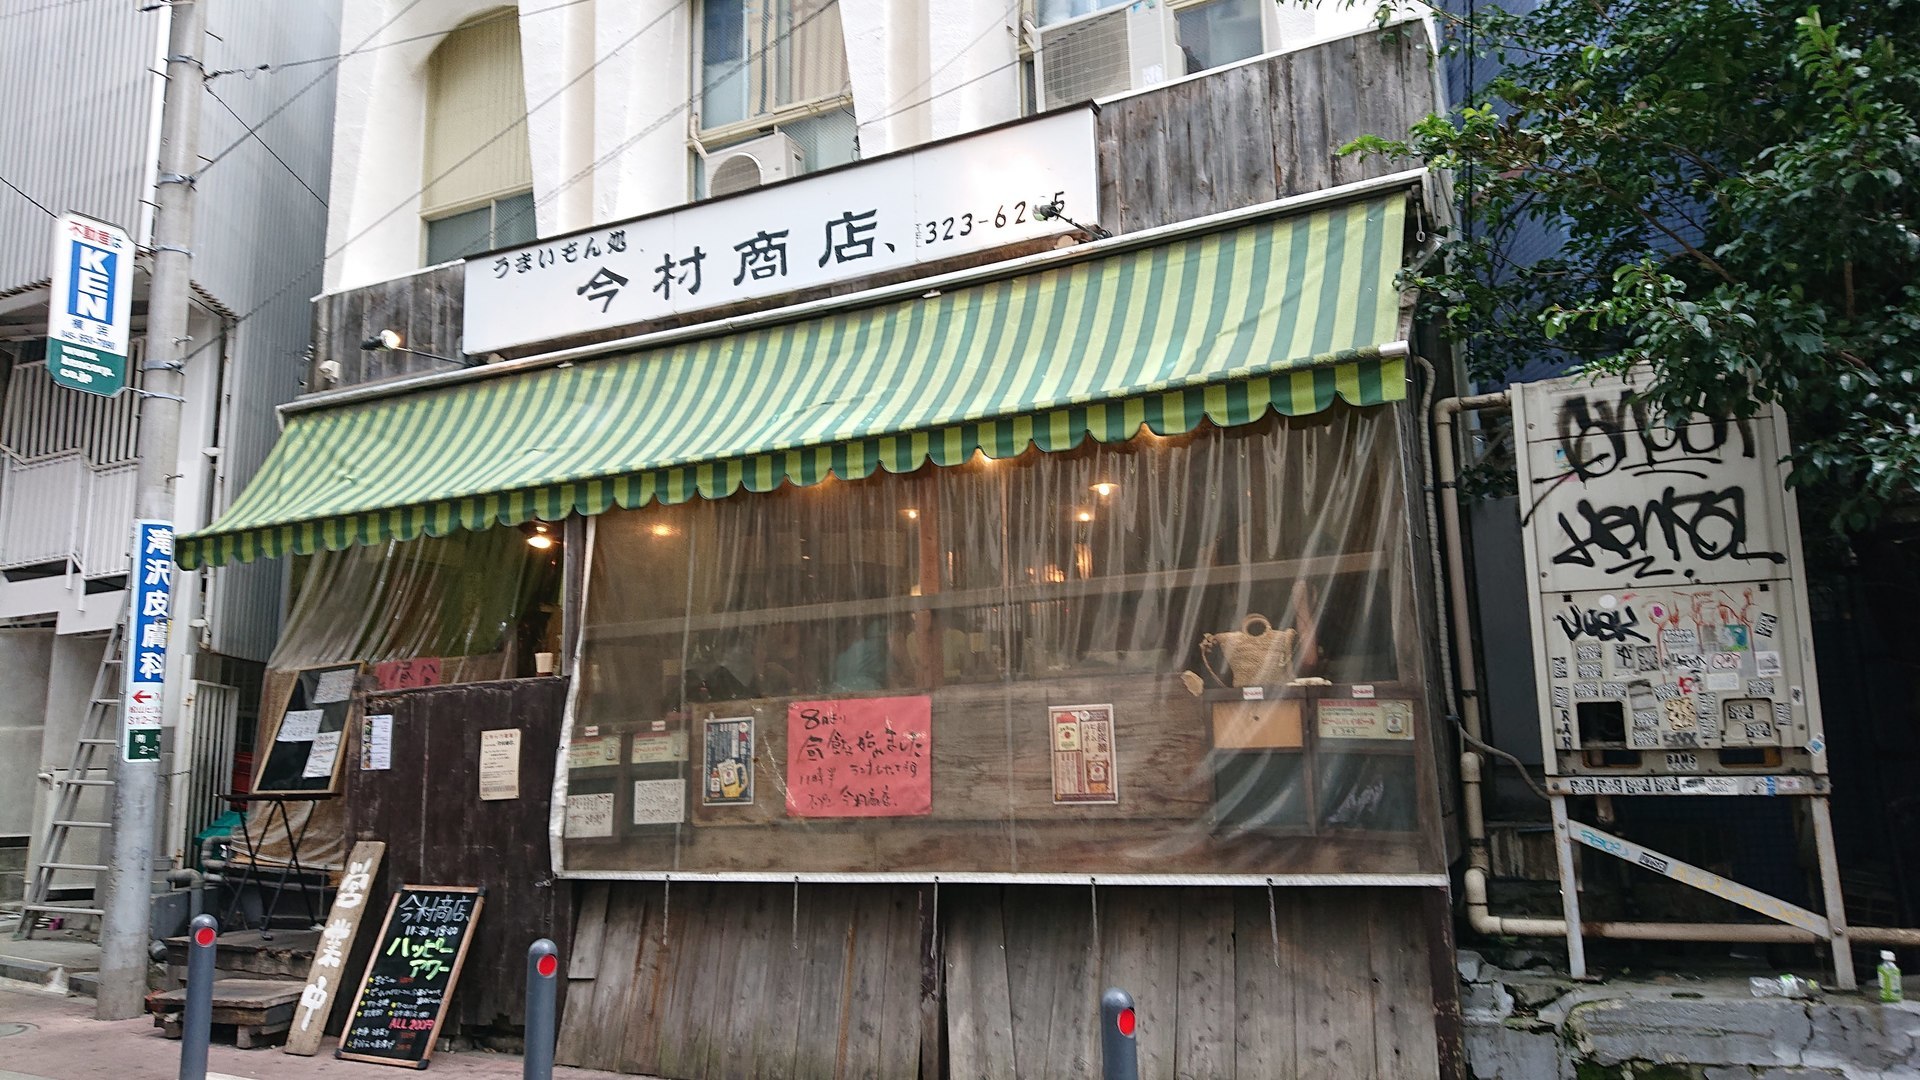 今村商店で海丼 横浜駅周辺 時々あちらこちら 孤独のワンコインランチ日記